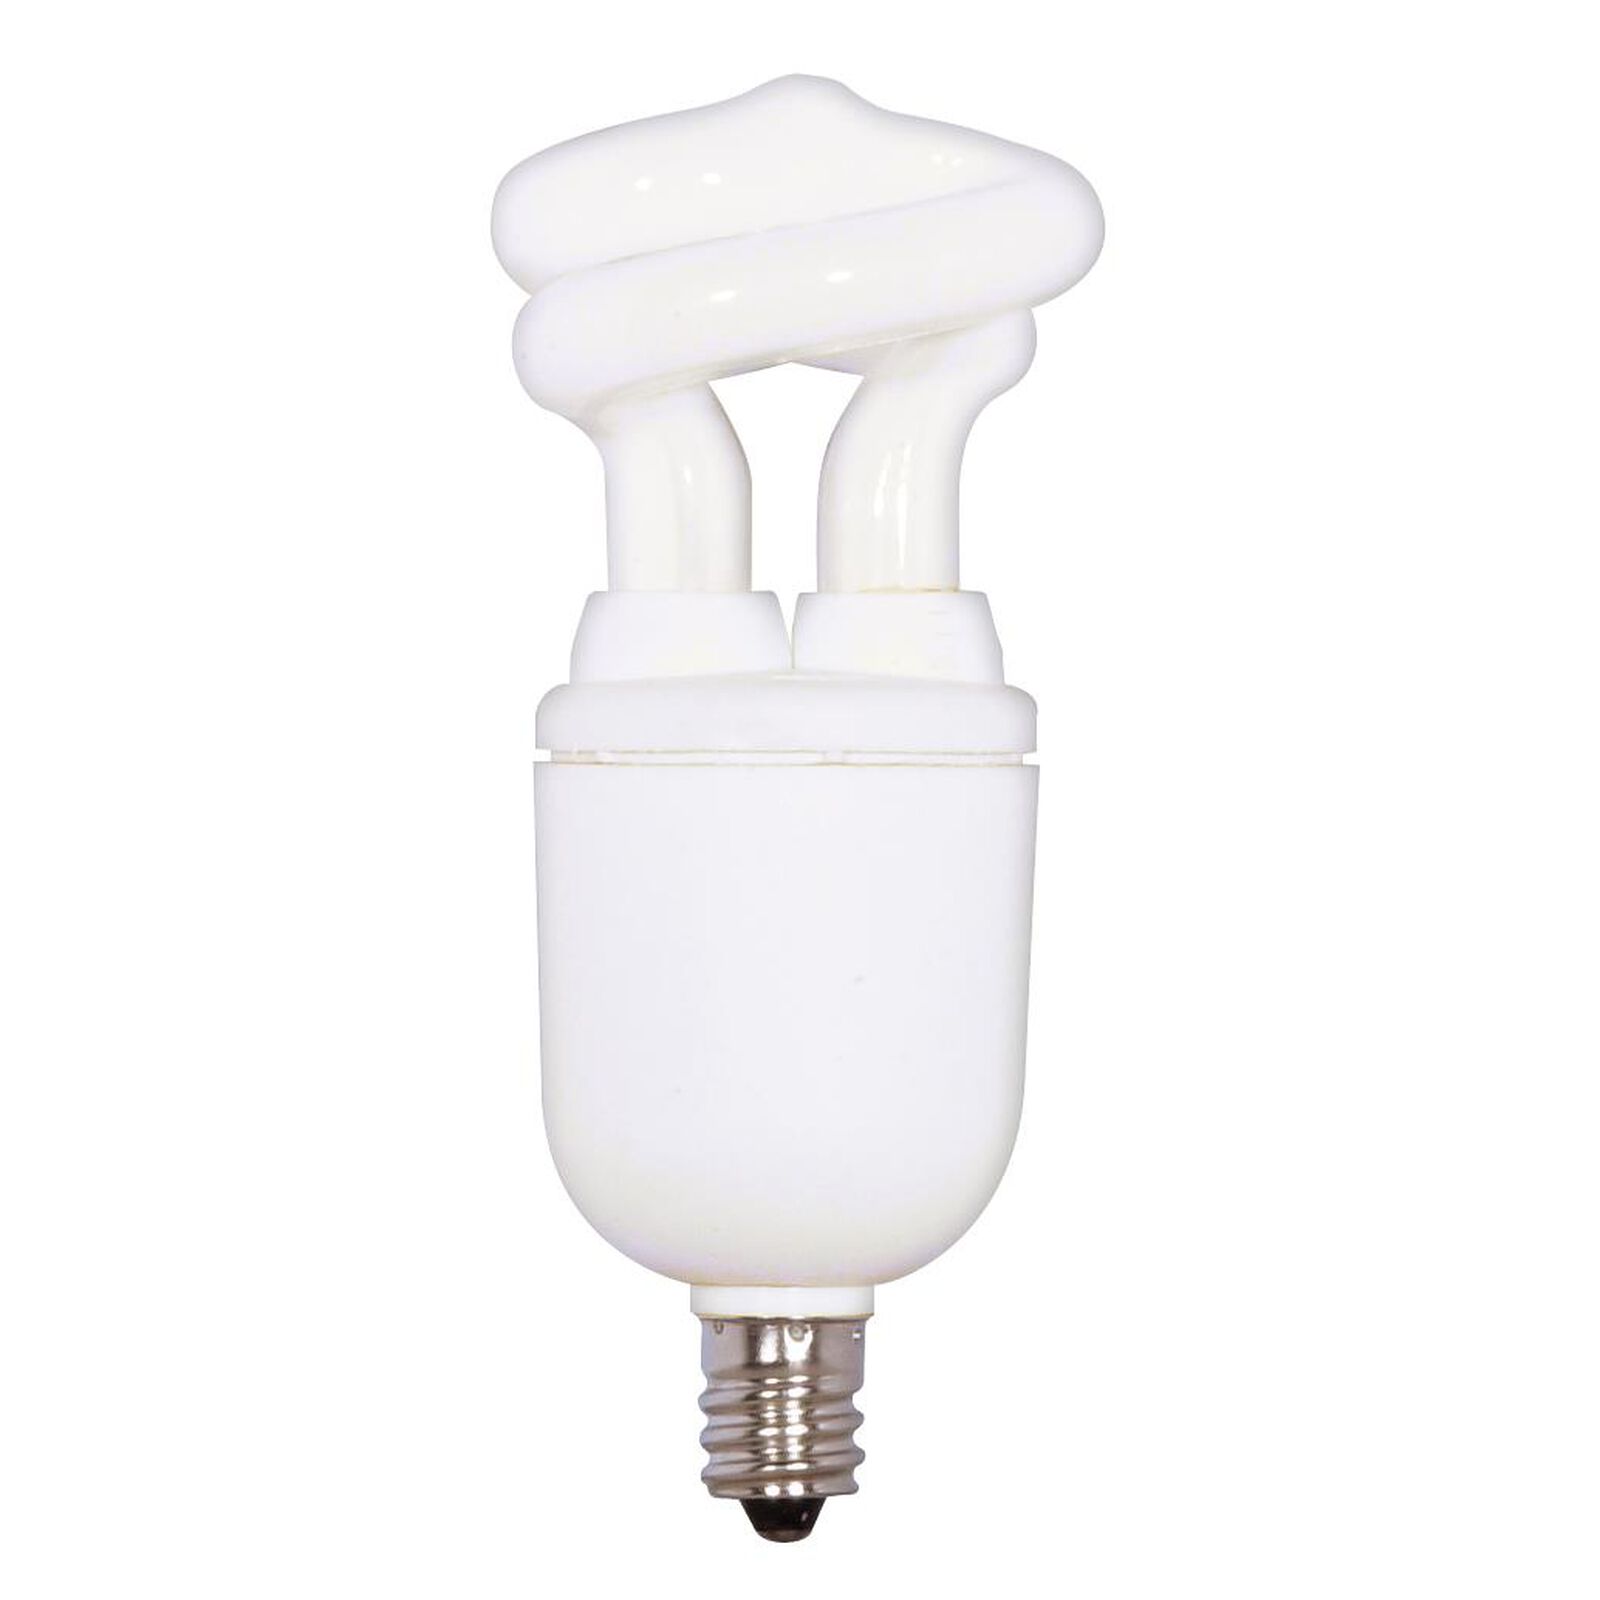 5 Watt 2700K Compact Fluorescent Light Bulb | Capitol Lighting